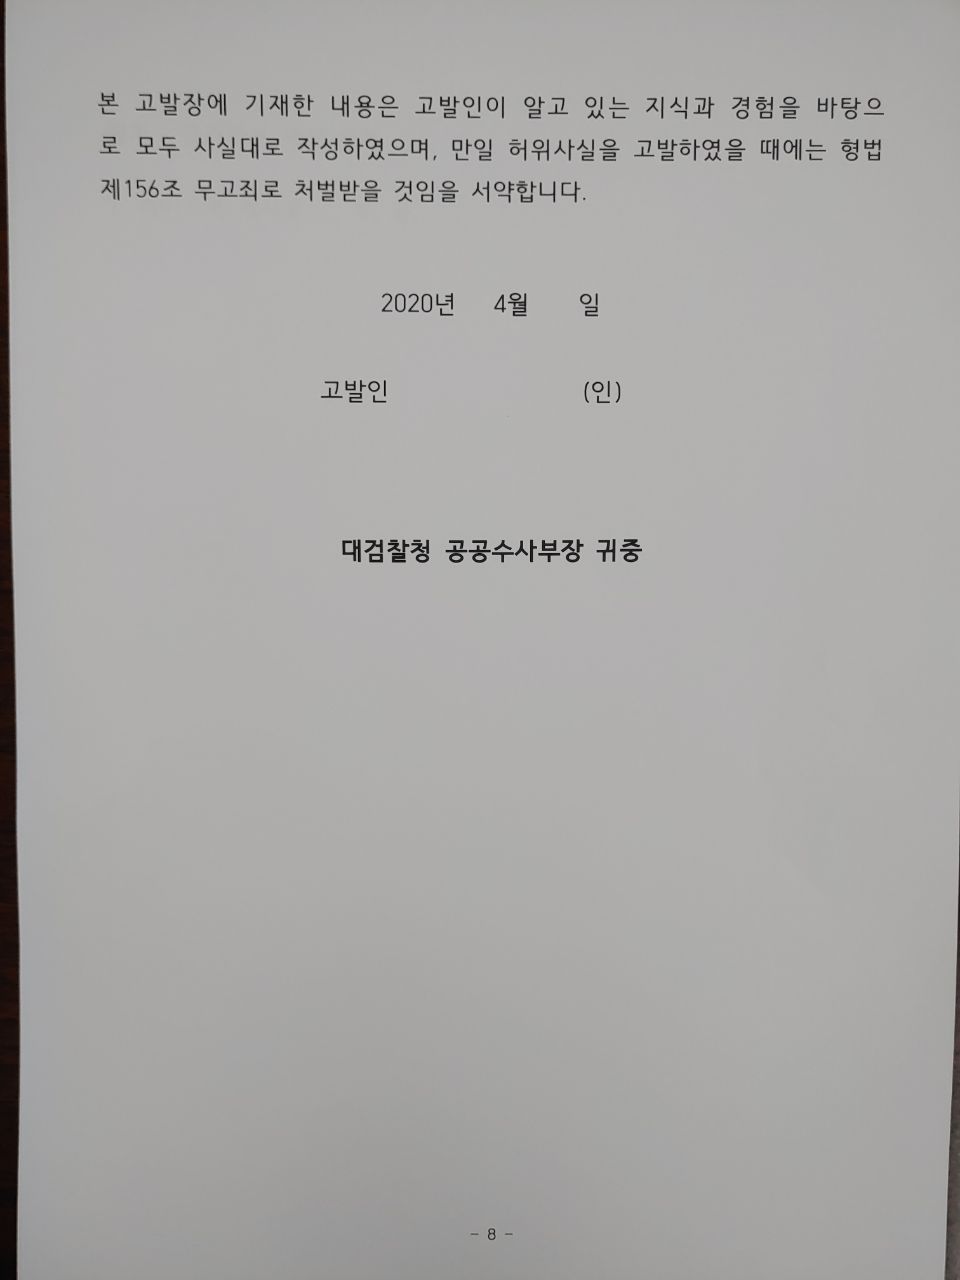 지난해 4월 8일 김웅 당시 미래통합당 송파 갑 국회의원 후보가 미래통합당 측에 전달한 고발장 파일. (자료=뉴스버스)